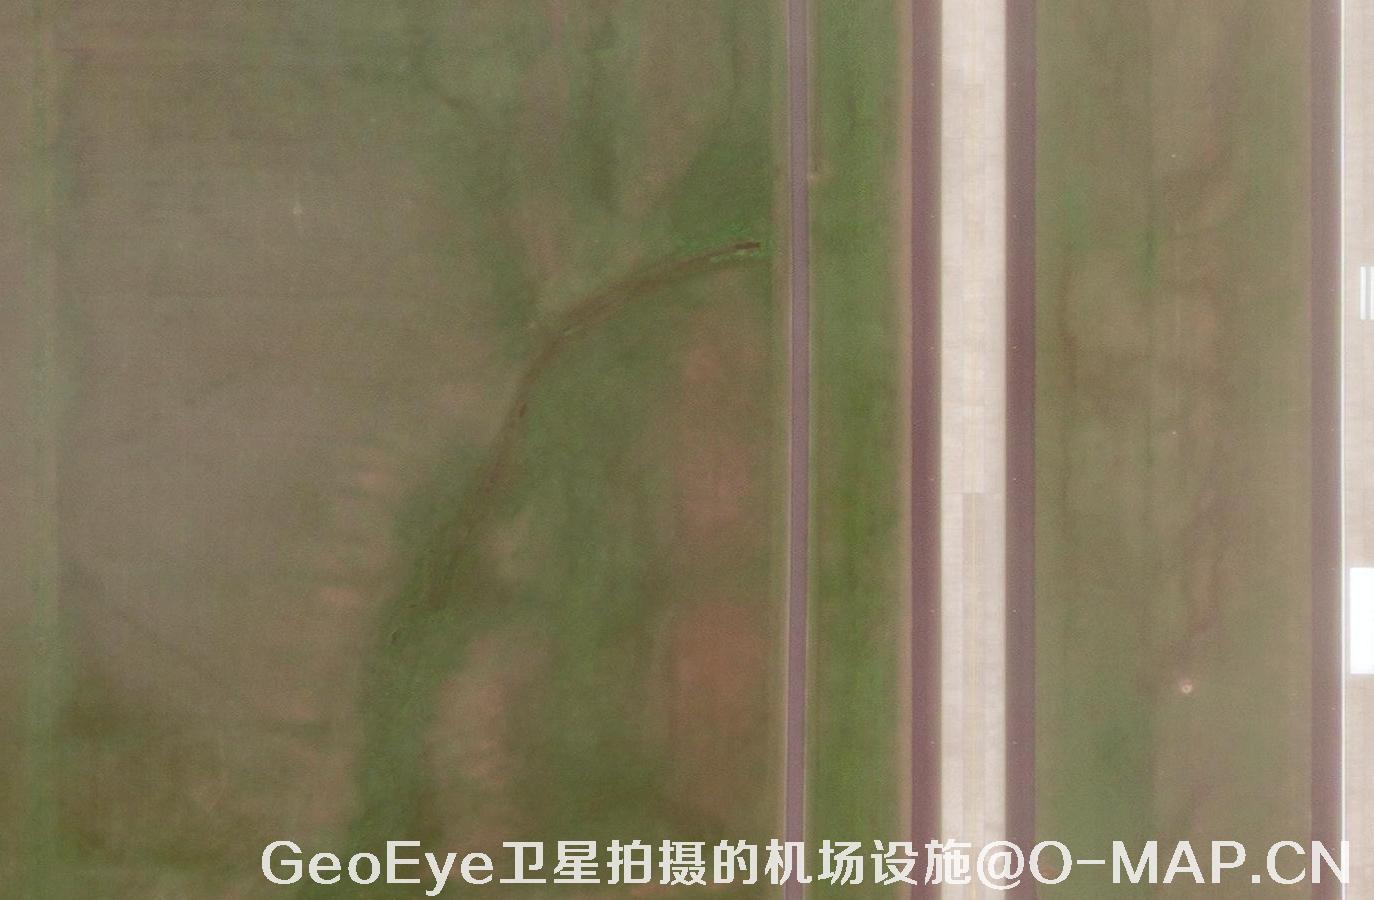 GeoEye卫星拍摄的0.5米分辨率卫星图